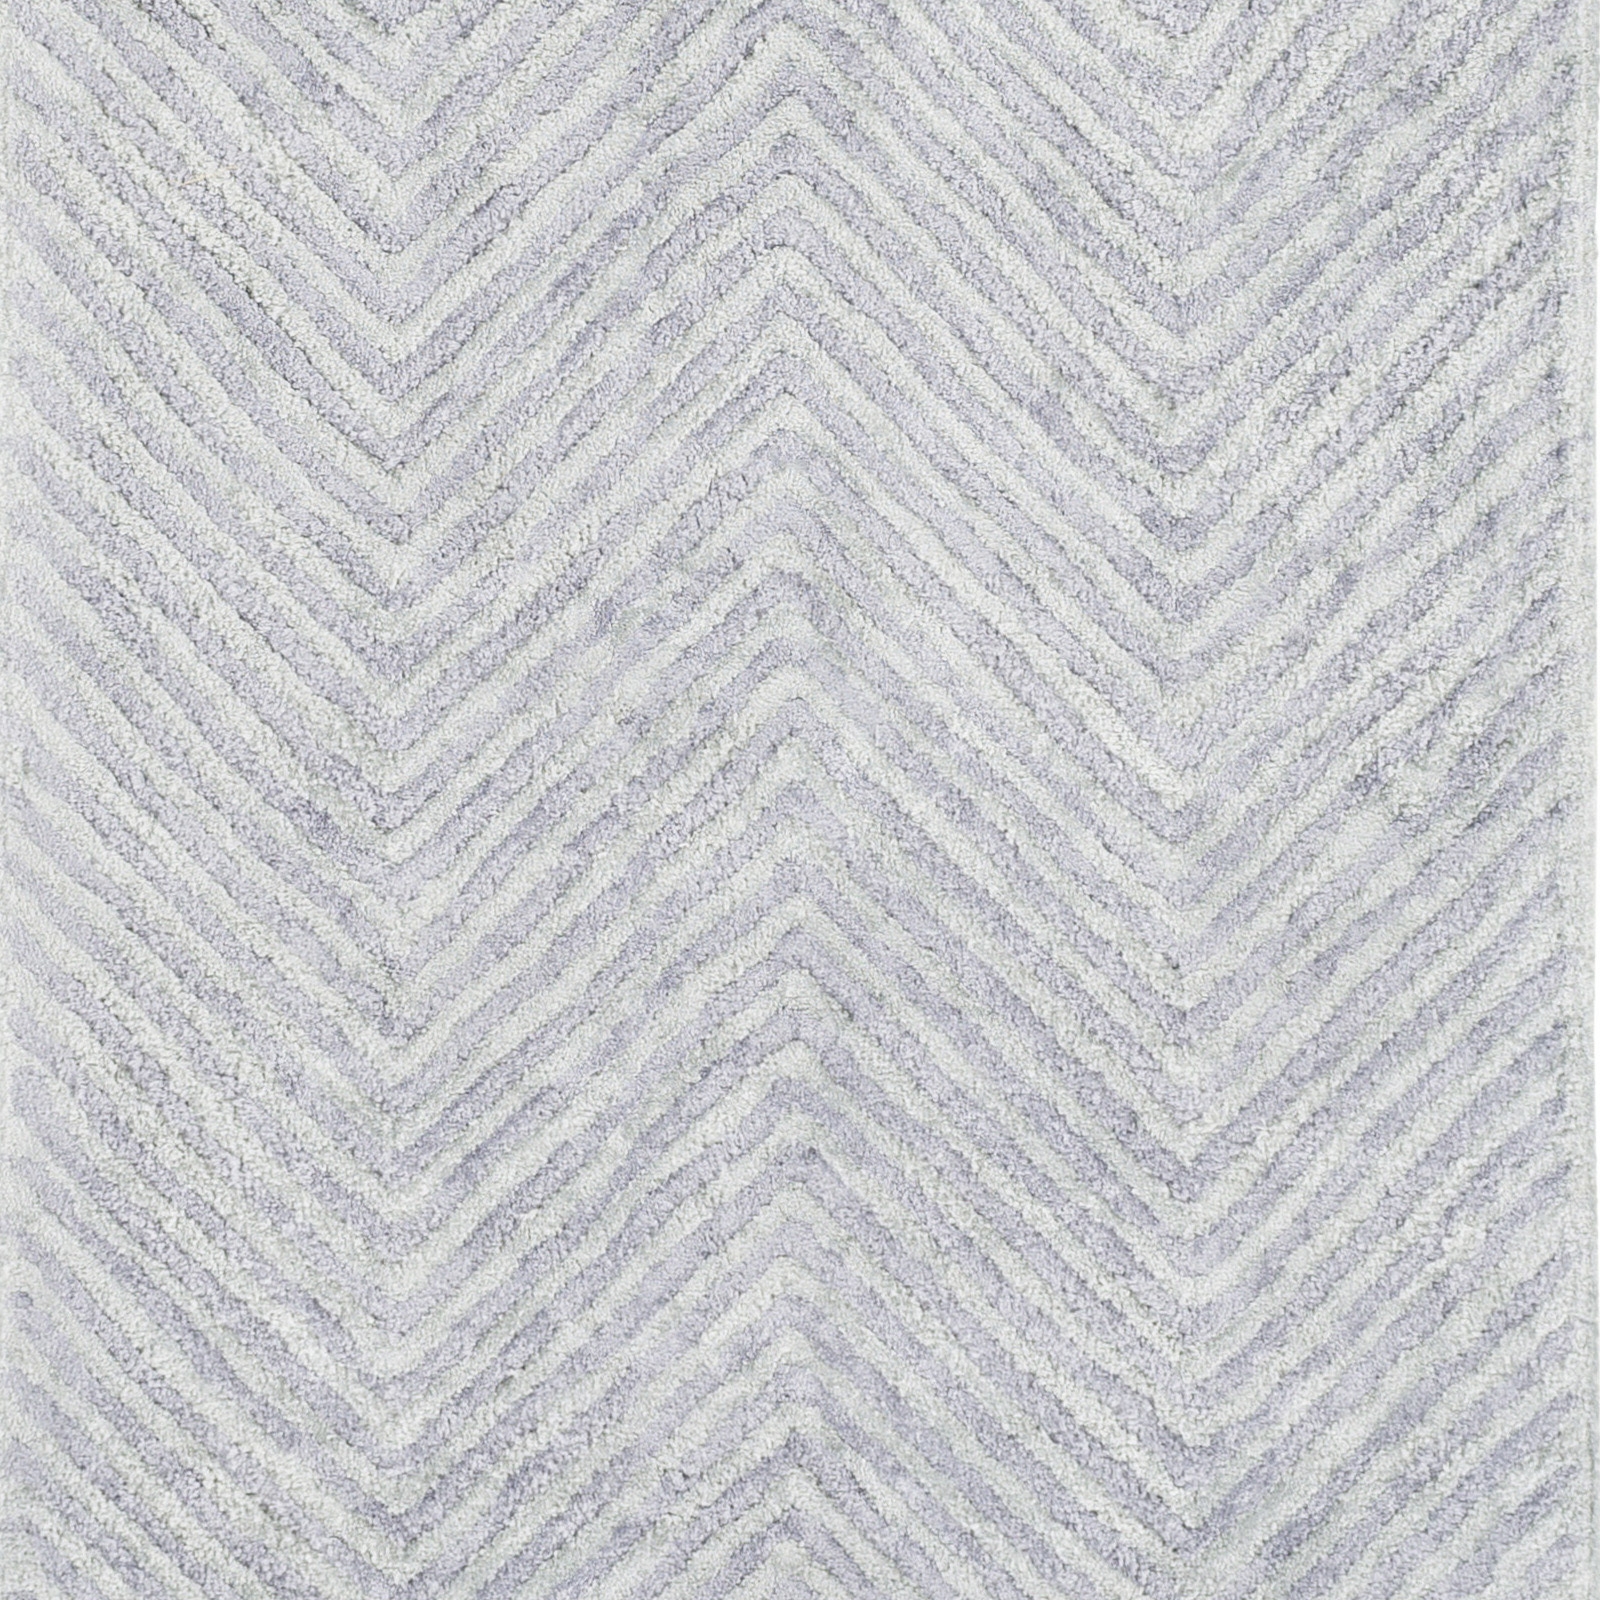 Quartz 8' x 10' Area Rug - Image 1